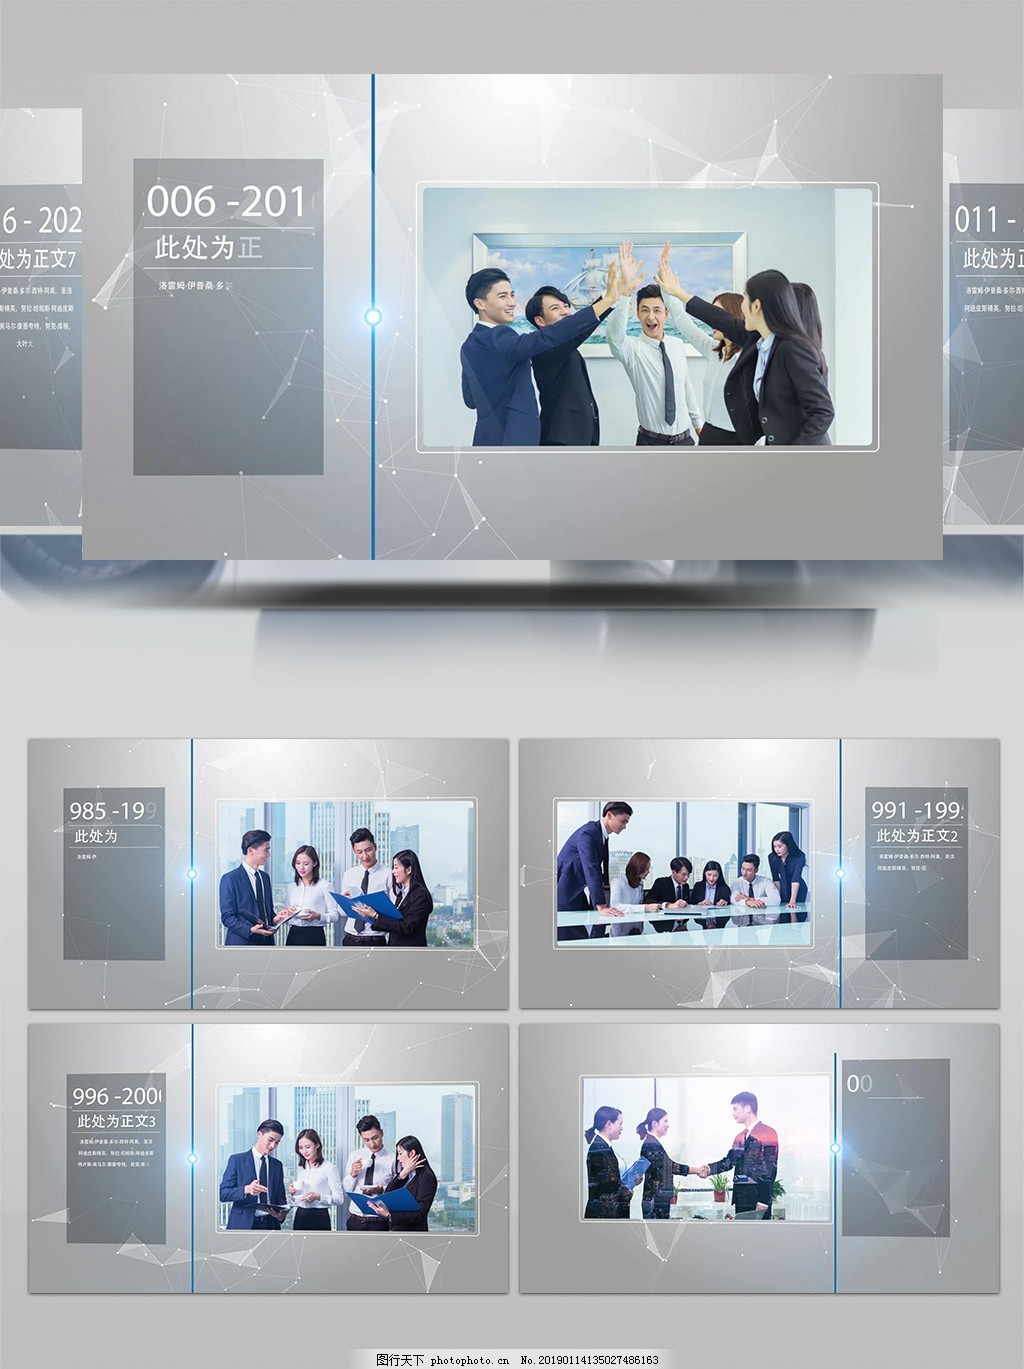 现代公司企业发展历史未来时间线AE模板图片